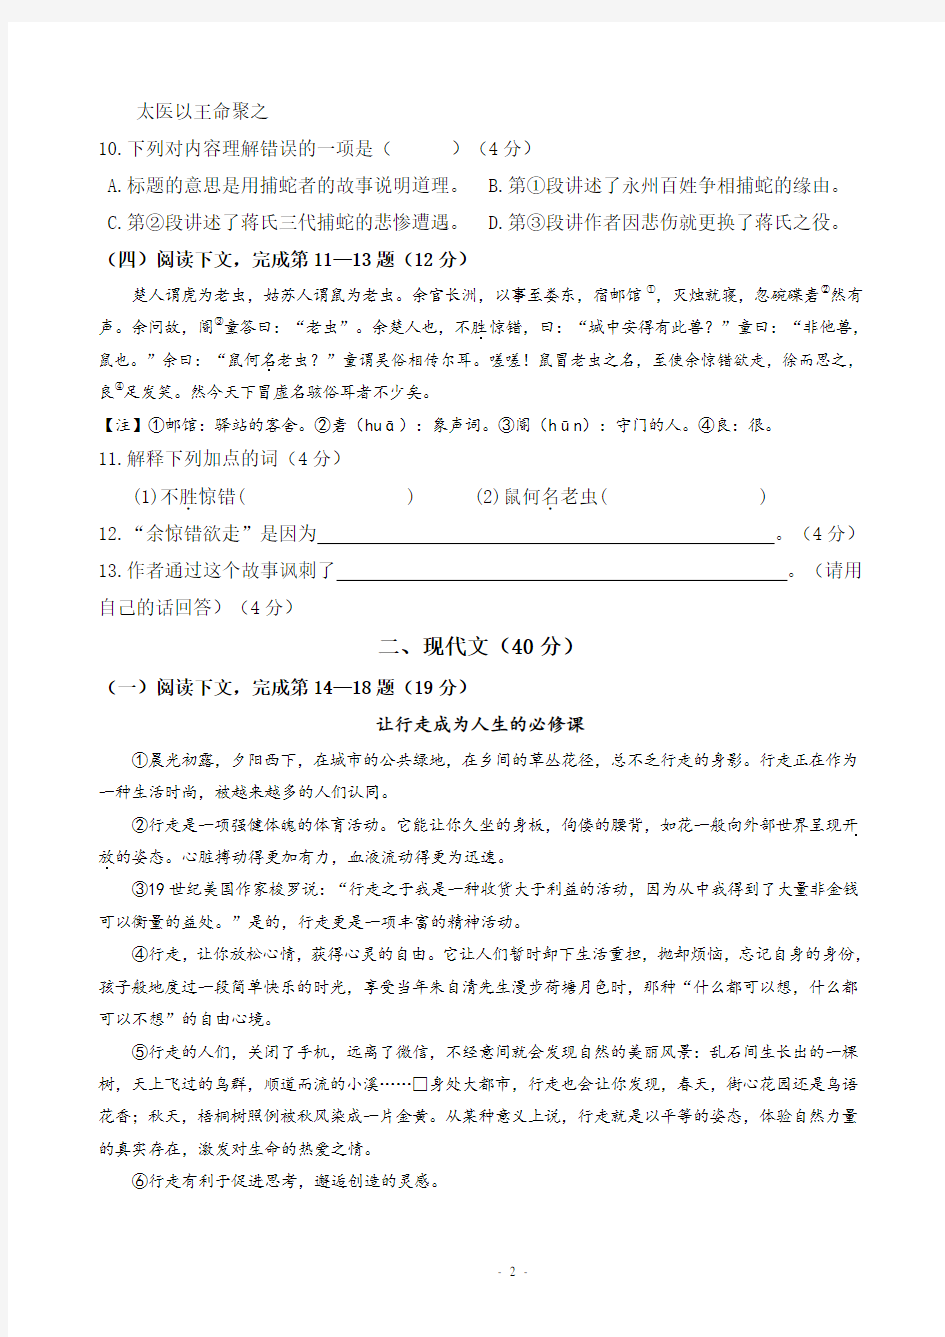 2016年上海中考语文试卷及标准答案(最新word版)